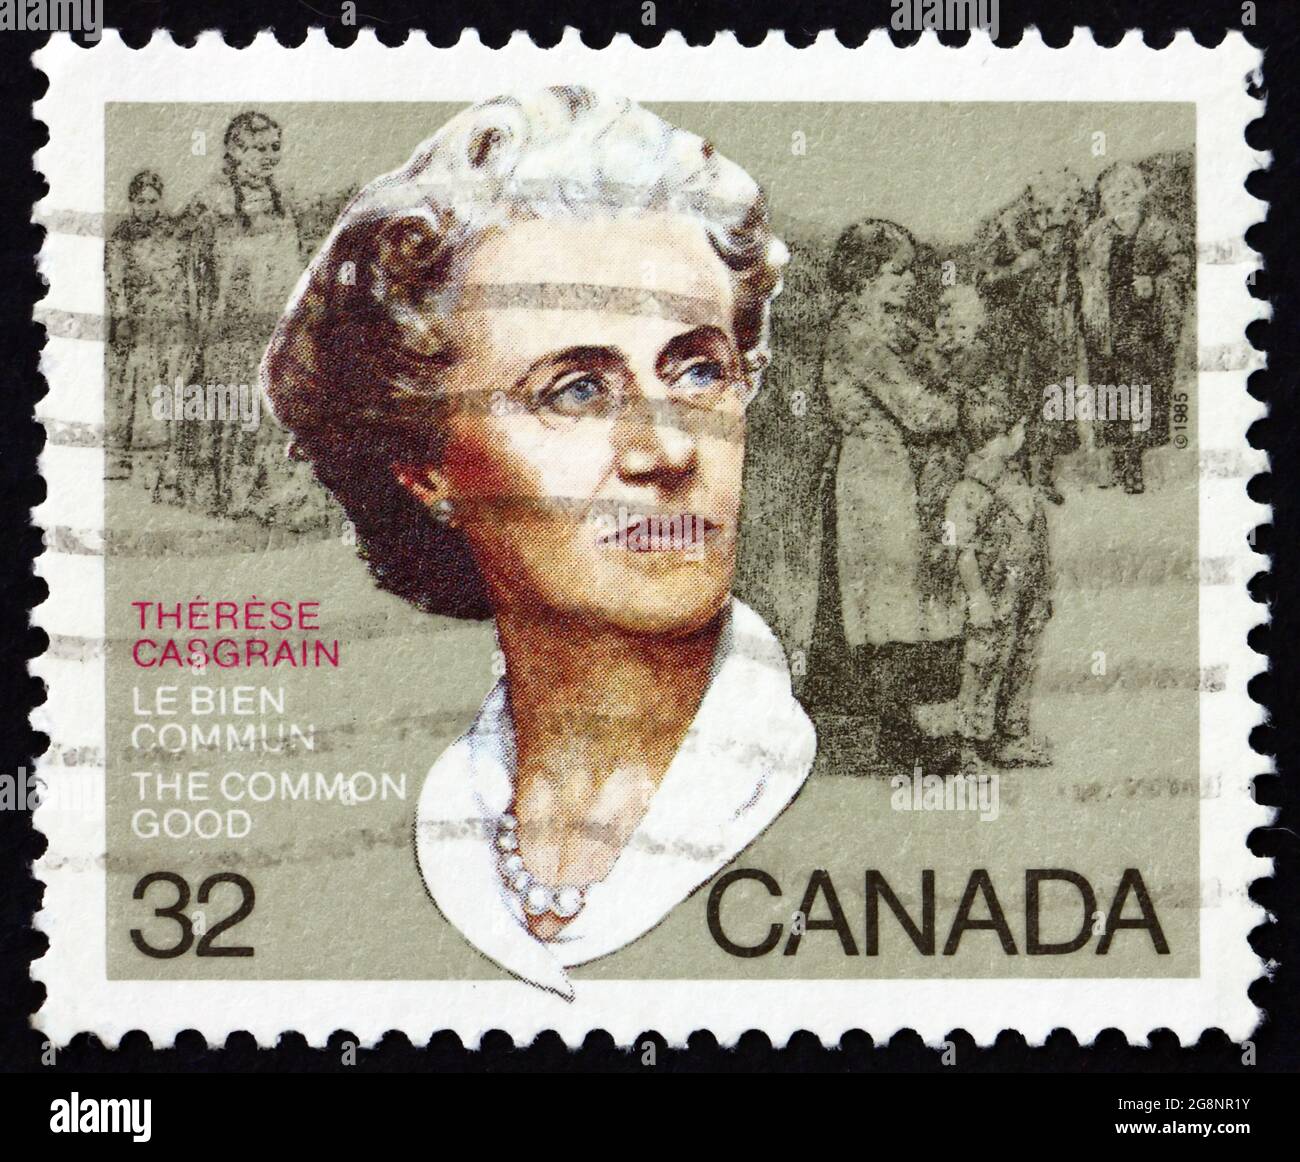 KANADA - UM 1985: Eine in Kanada gedruckte Briefmarke zeigt Therese Casgrain (1896-1981), eine französische kanadische Feministin, Reformerin, Politikerin und Senatorin, c Stockfoto